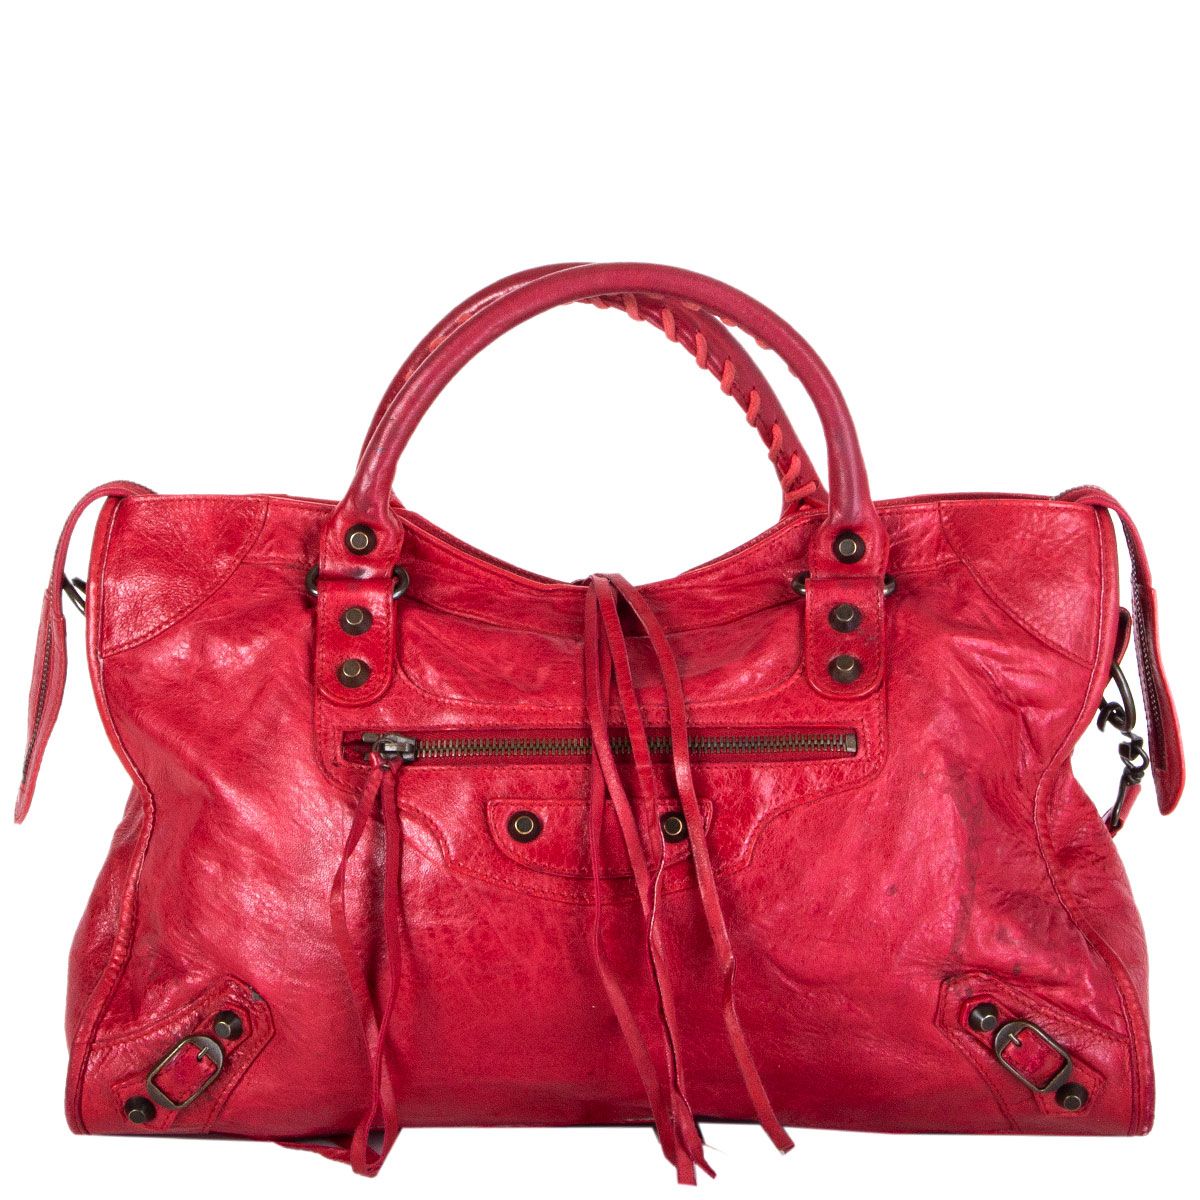 Balenciaga CIty S Leather Bag